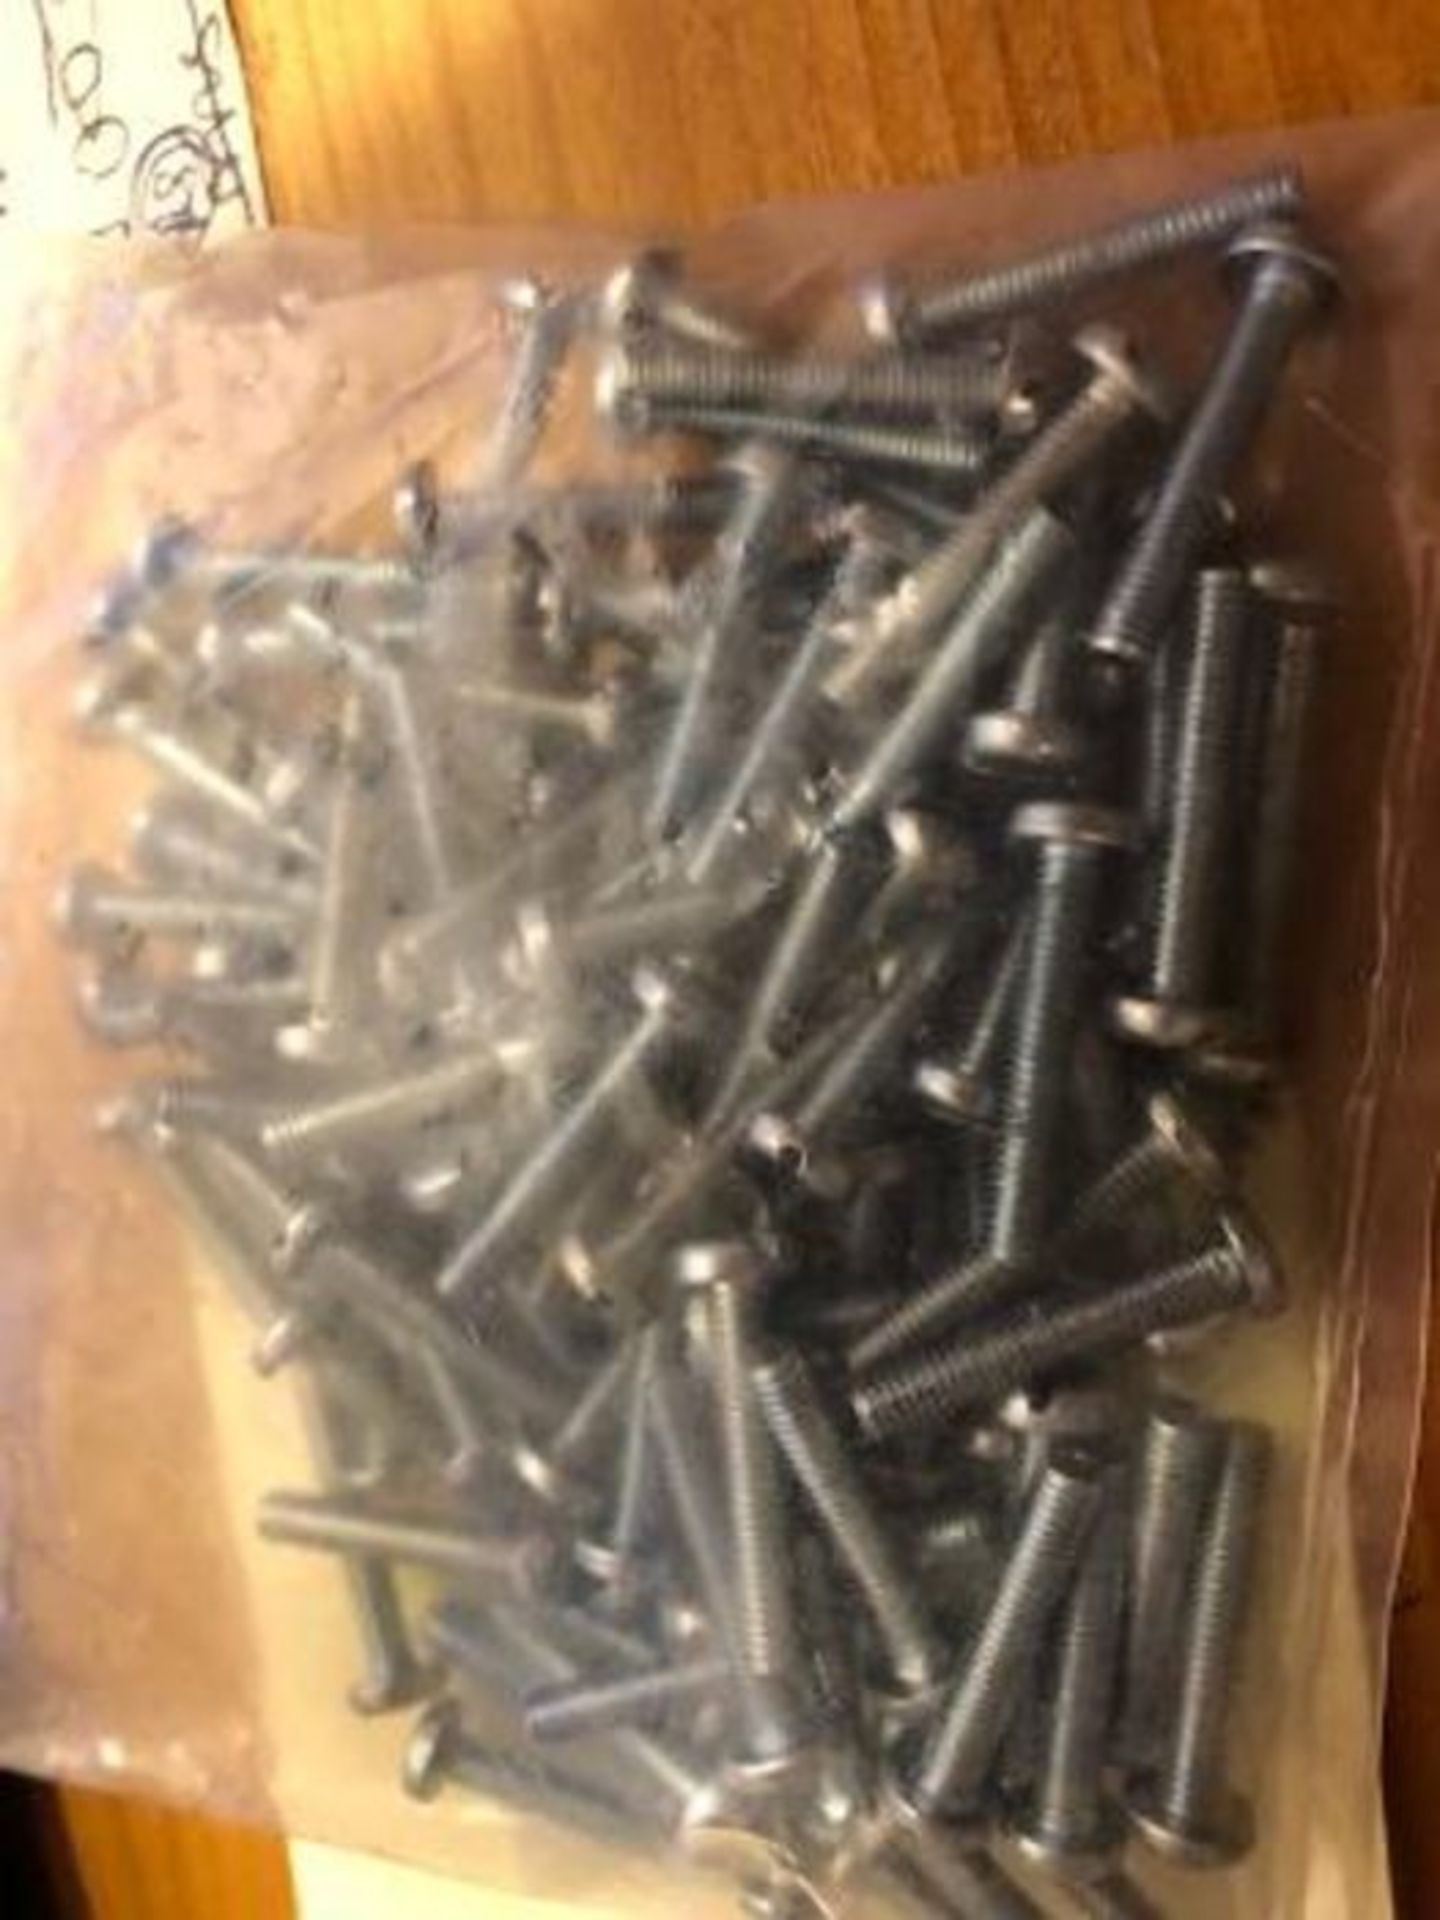 20,000 x ZnPt steel slot pan head screws,M3.5x20mm 560833 - Image 2 of 2